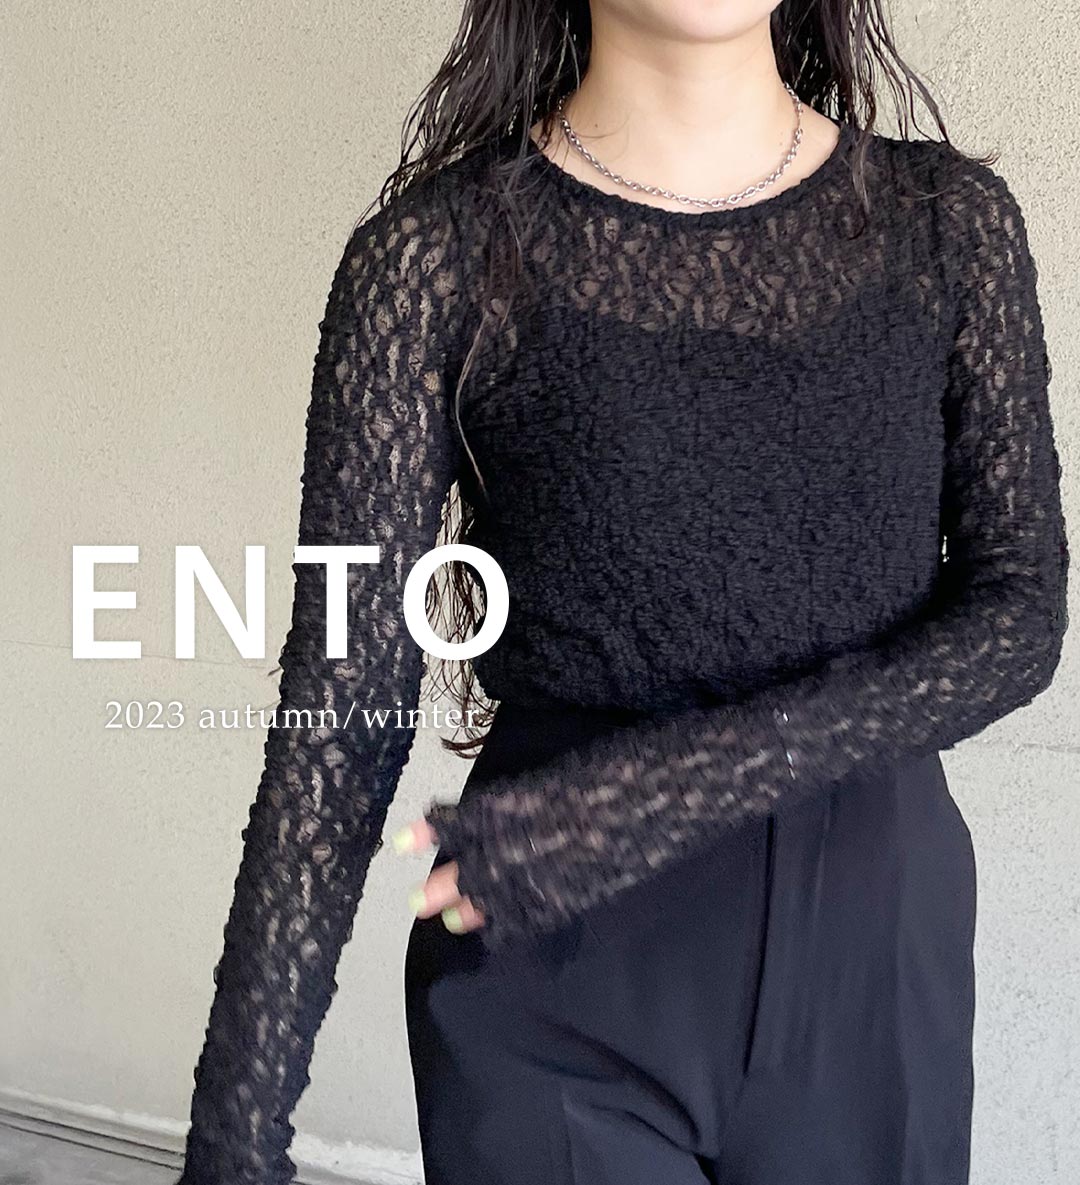 レディースファッションブランドento(エント)2023年春夏コレクション、質の良さと機能的なデザインで、長く愛着を持てる一着に出会える「ENTO(エント)」エコ素材やウォッシャブル、2way、撥水などの機能性に優れたアイテムを展開！